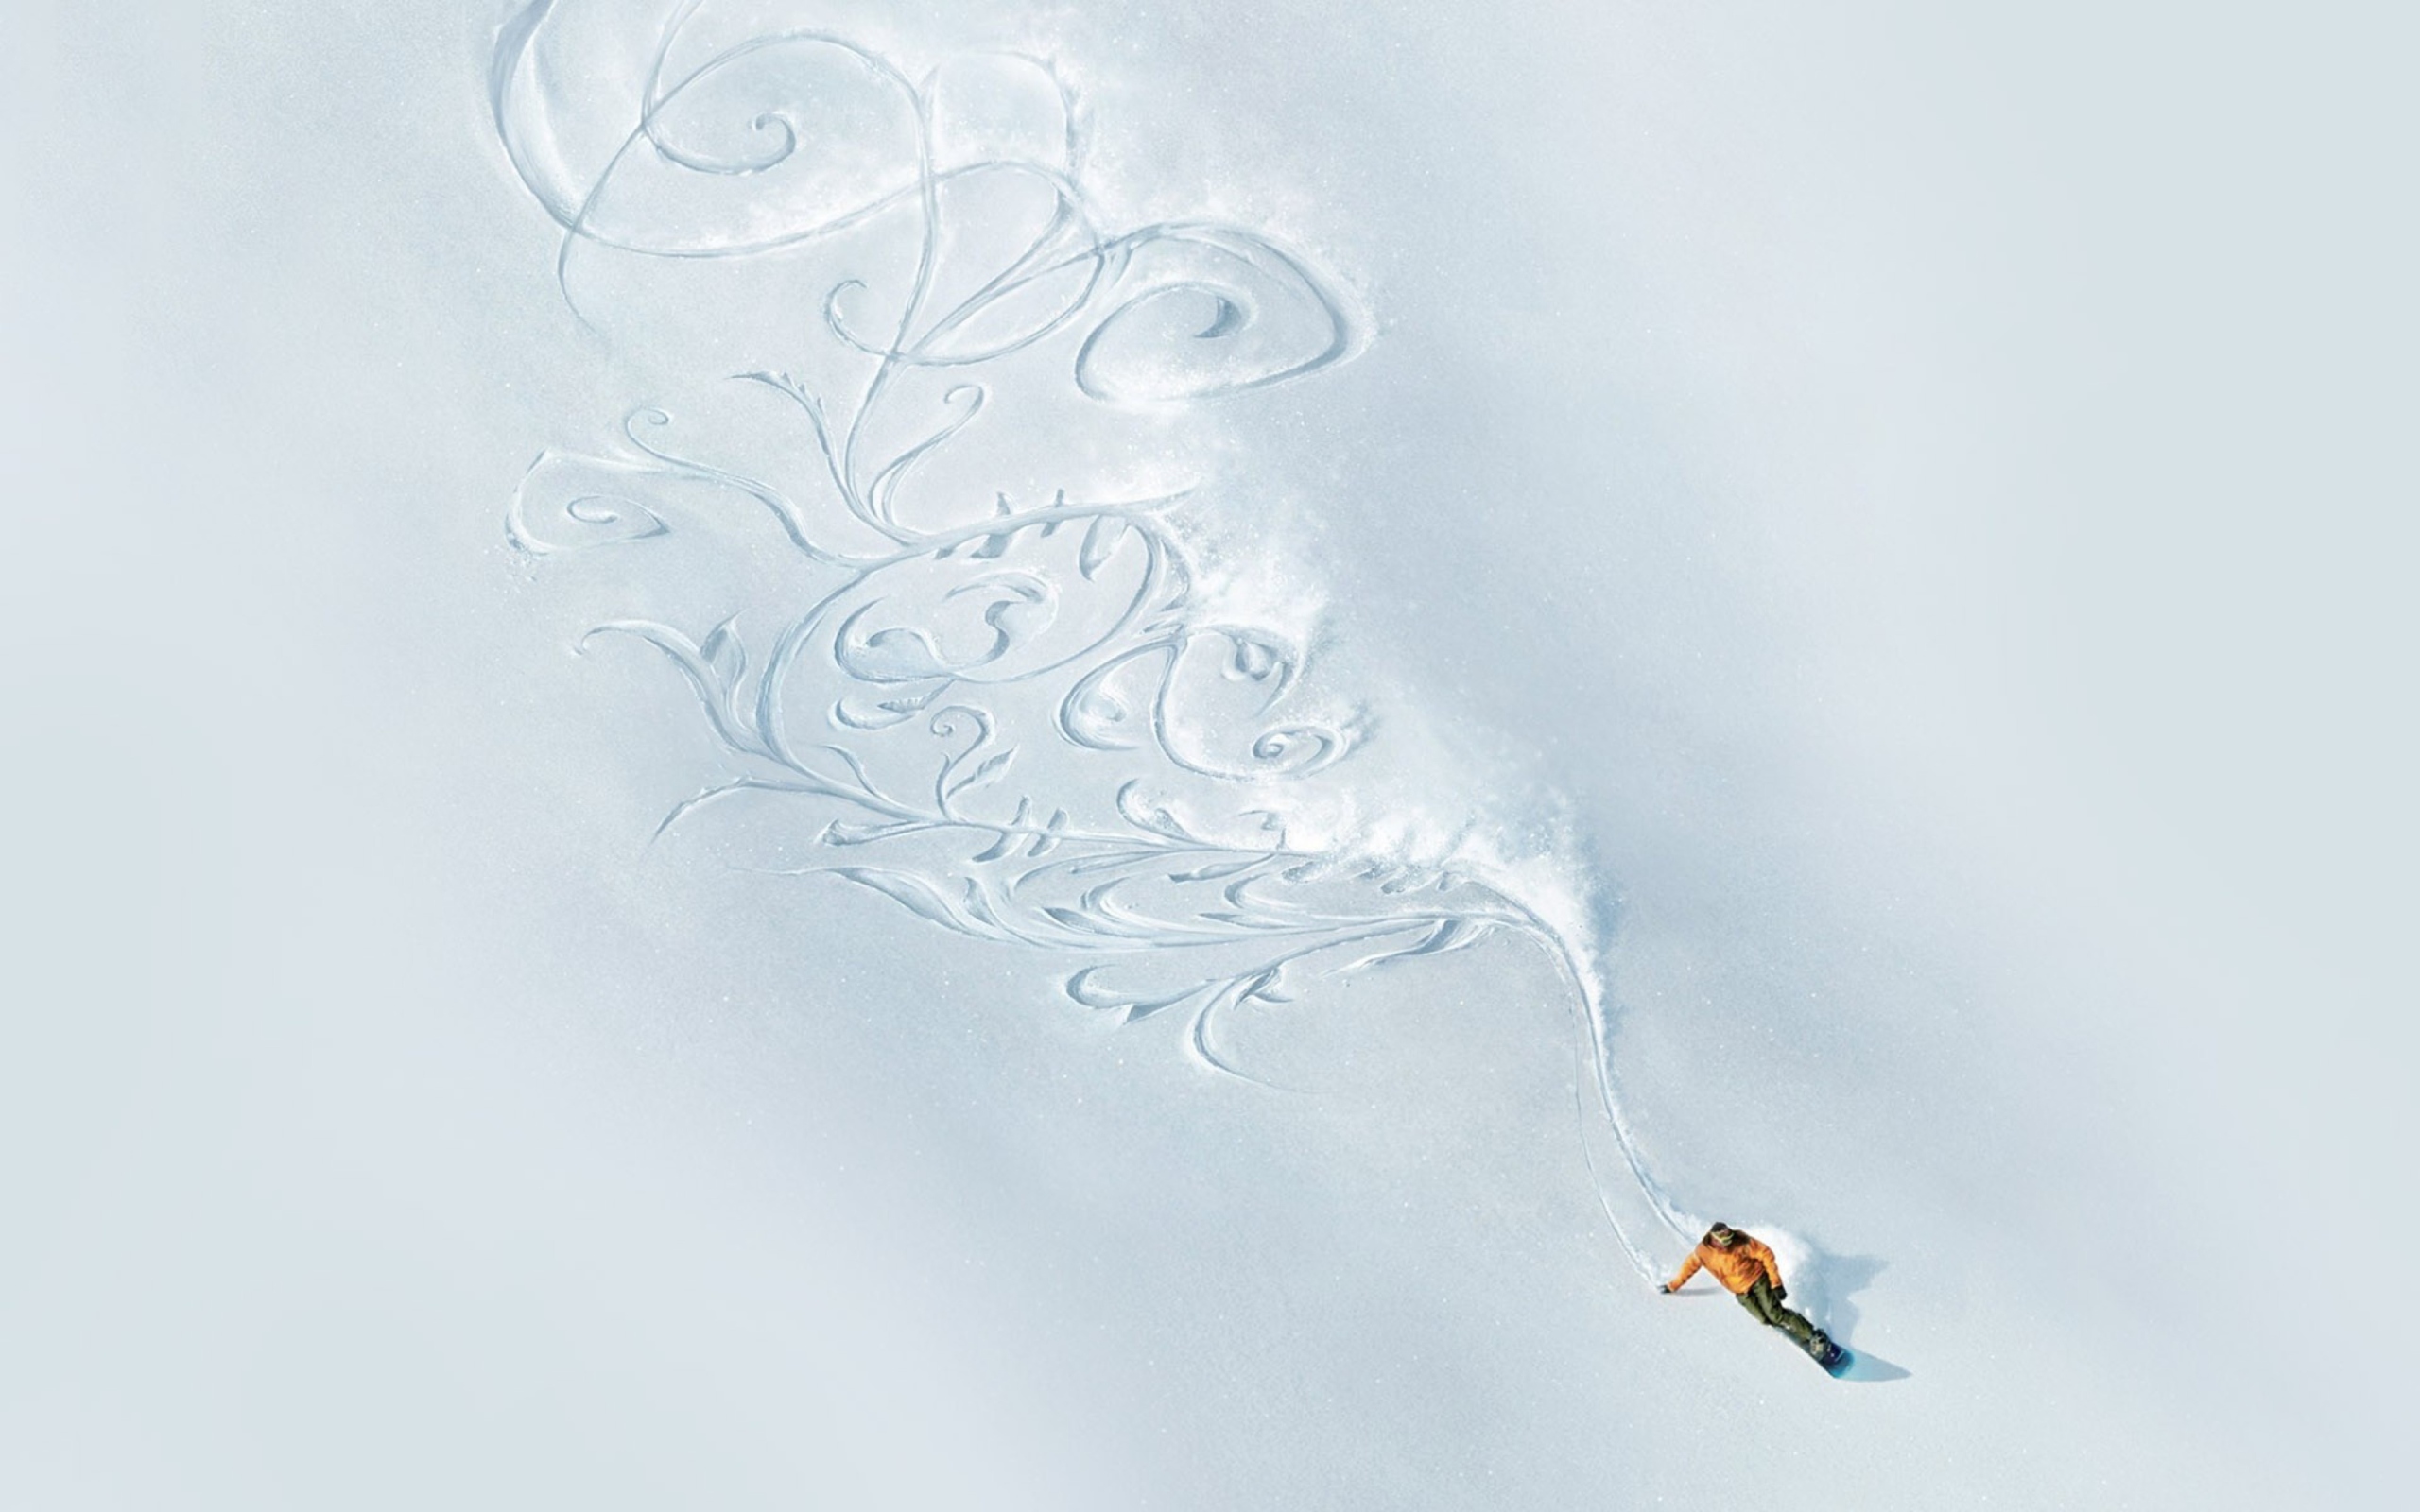 Das Snowboarding Art Wallpaper 2560x1600